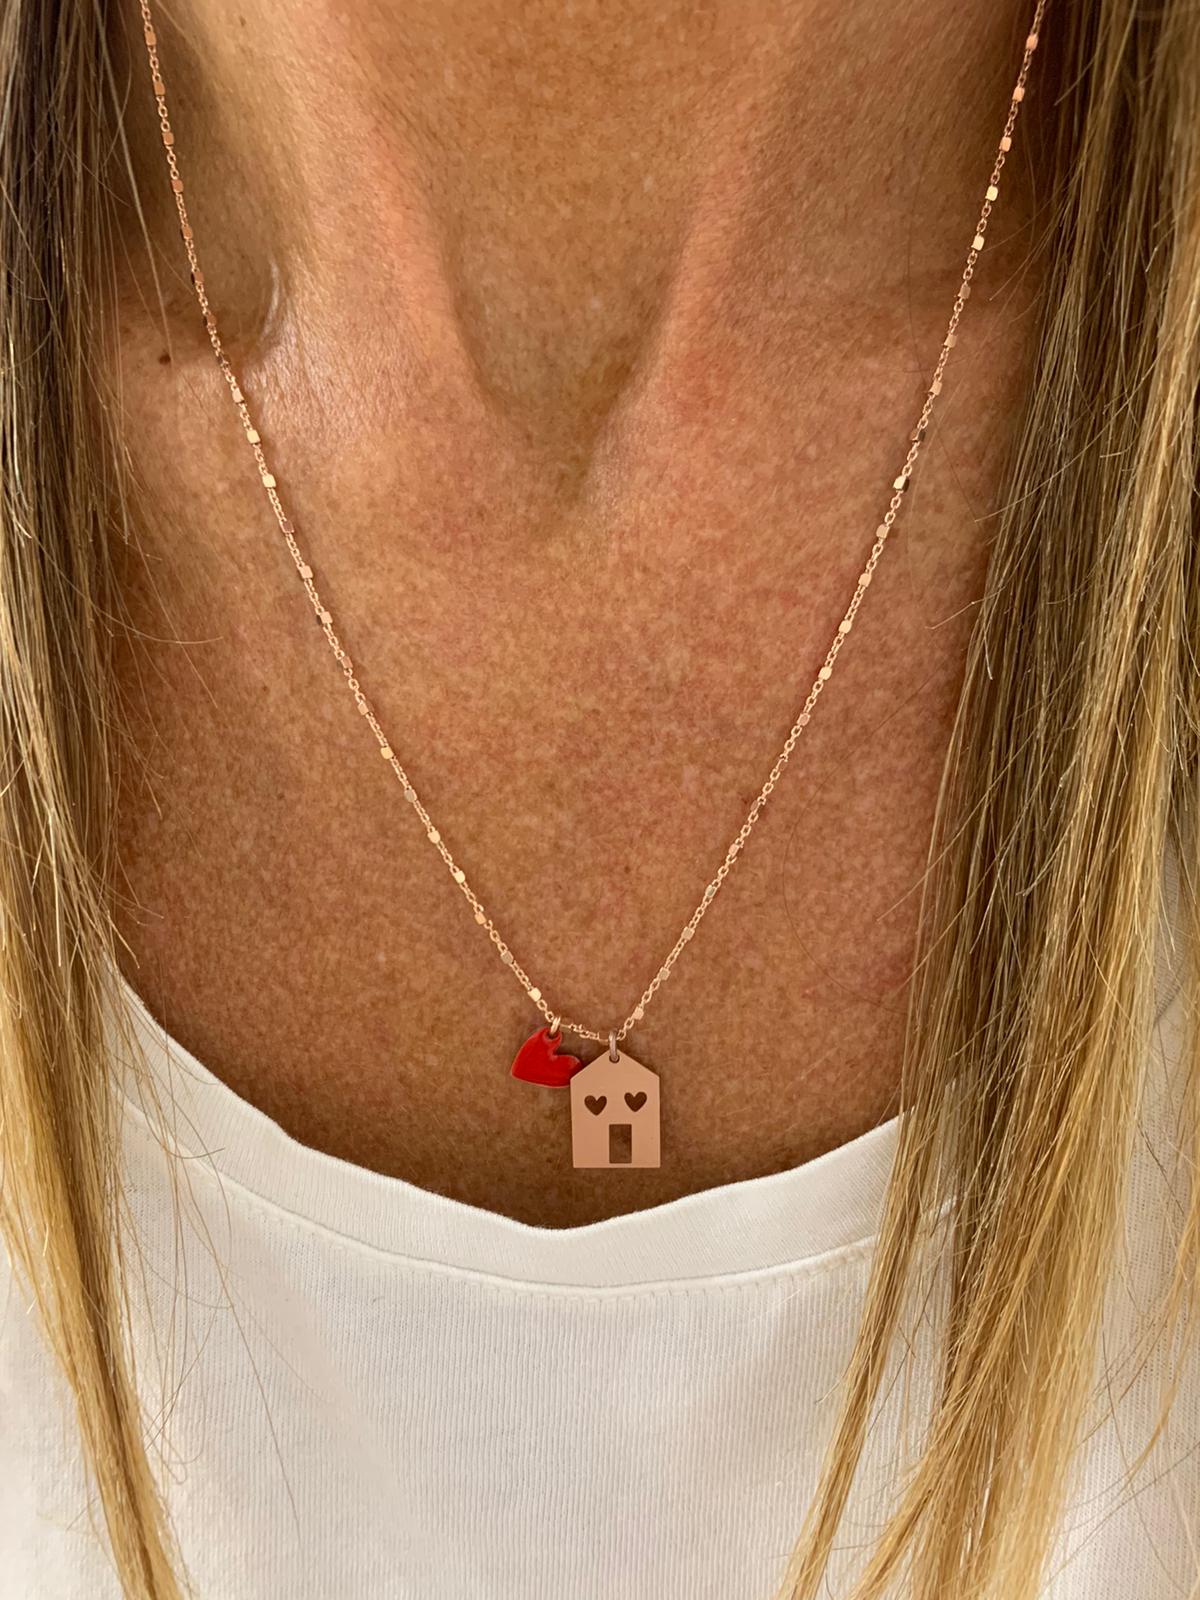 Collana catena dadini con casetta satinata e cuore smalto rosso da 0,8 mm bagnata in oro rosé - cm 50